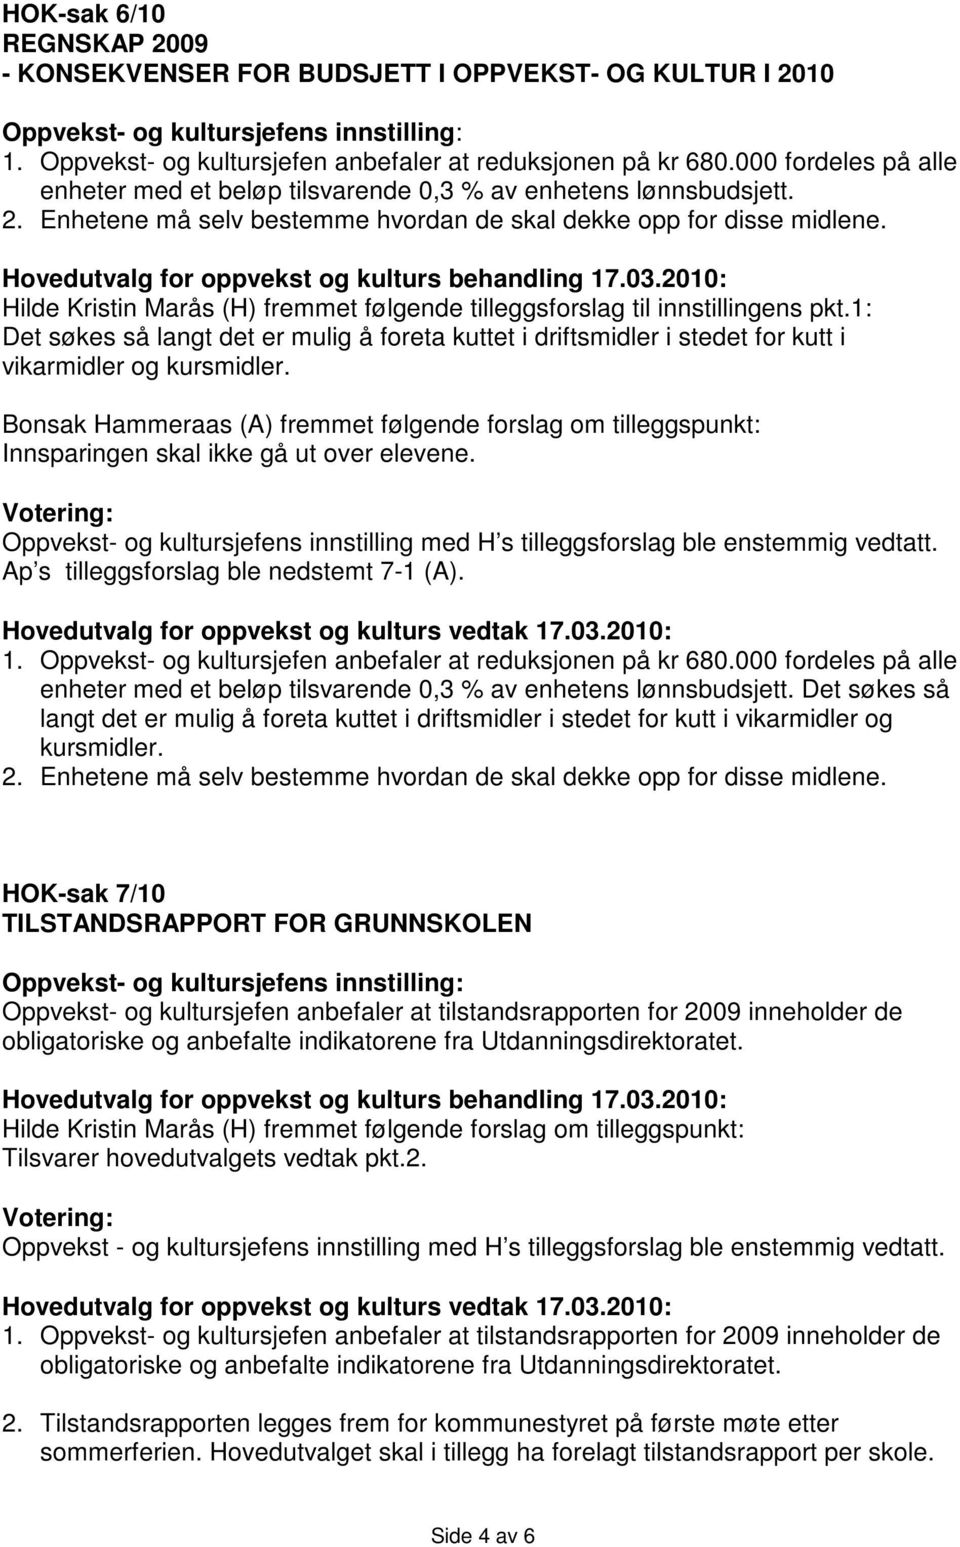 Hilde Kristin Marås (H) fremmet følgende tilleggsforslag til innstillingens pkt.1: Det søkes så langt det er mulig å foreta kuttet i driftsmidler i stedet for kutt i vikarmidler og kursmidler.